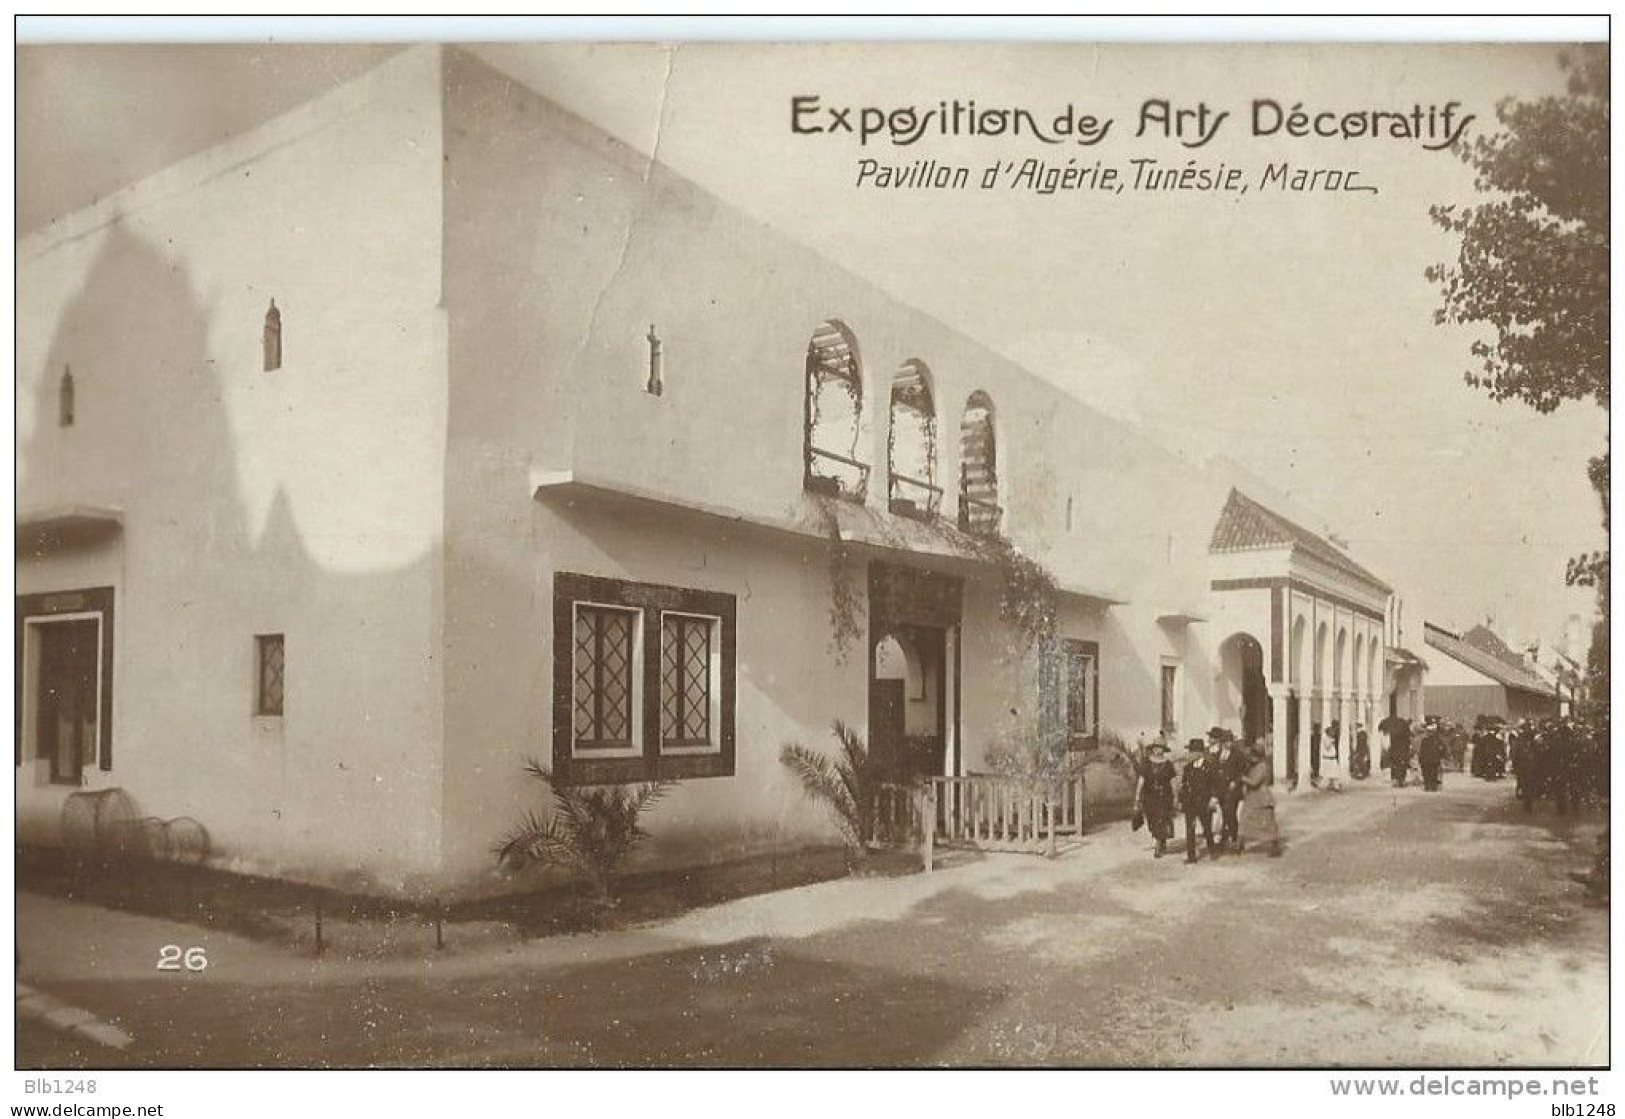 [75] Paris > Exposition Des Arts Decoratifs Pavillon D'Algerie, Tunisie Maroc - Exhibitions